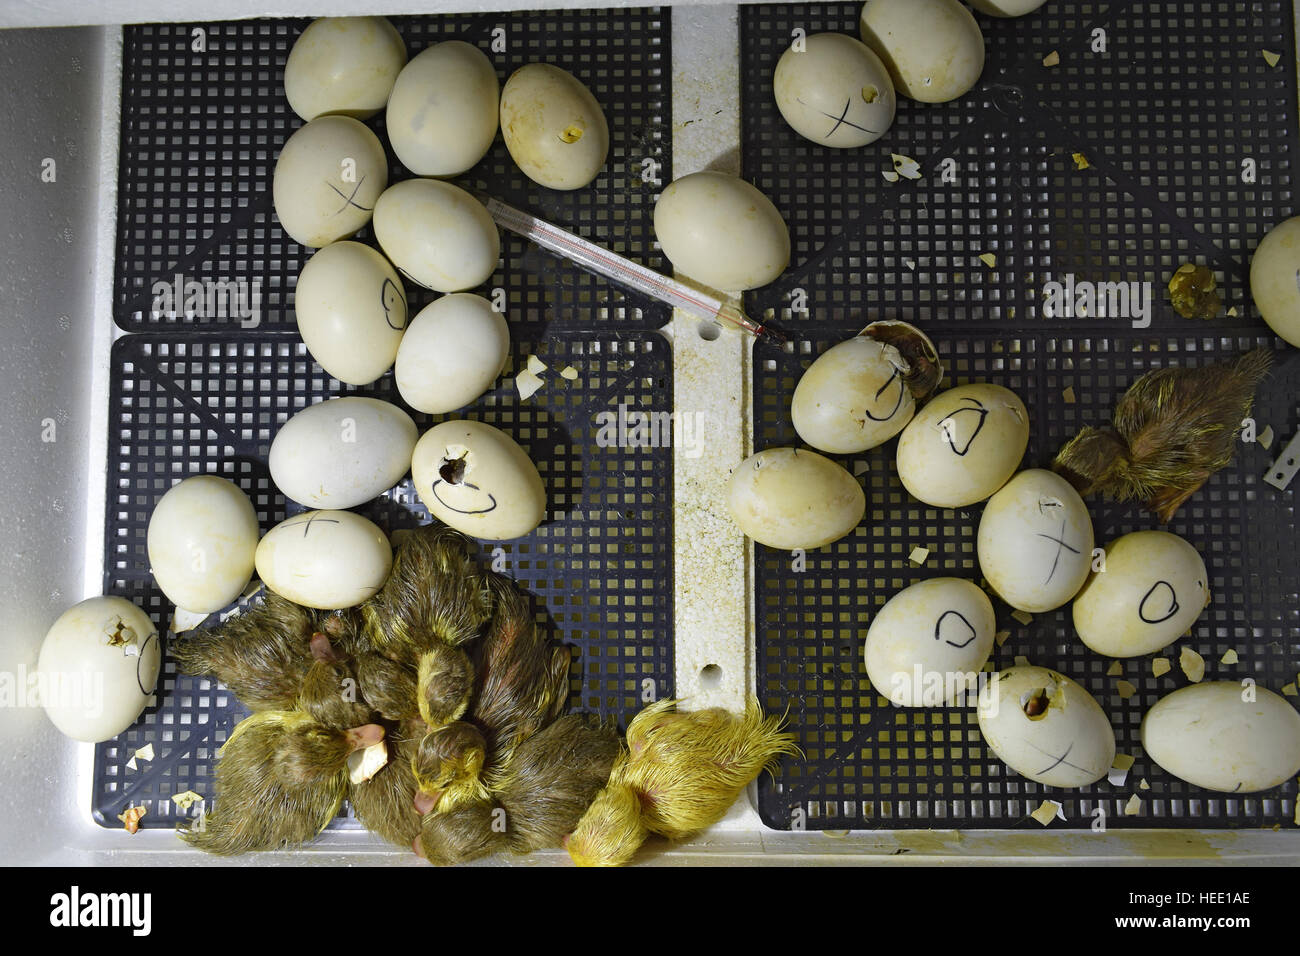 La eclosión de los huevos de patos de un pato almizclado en una incubadora. El cultivo de aves de corral. Foto de stock